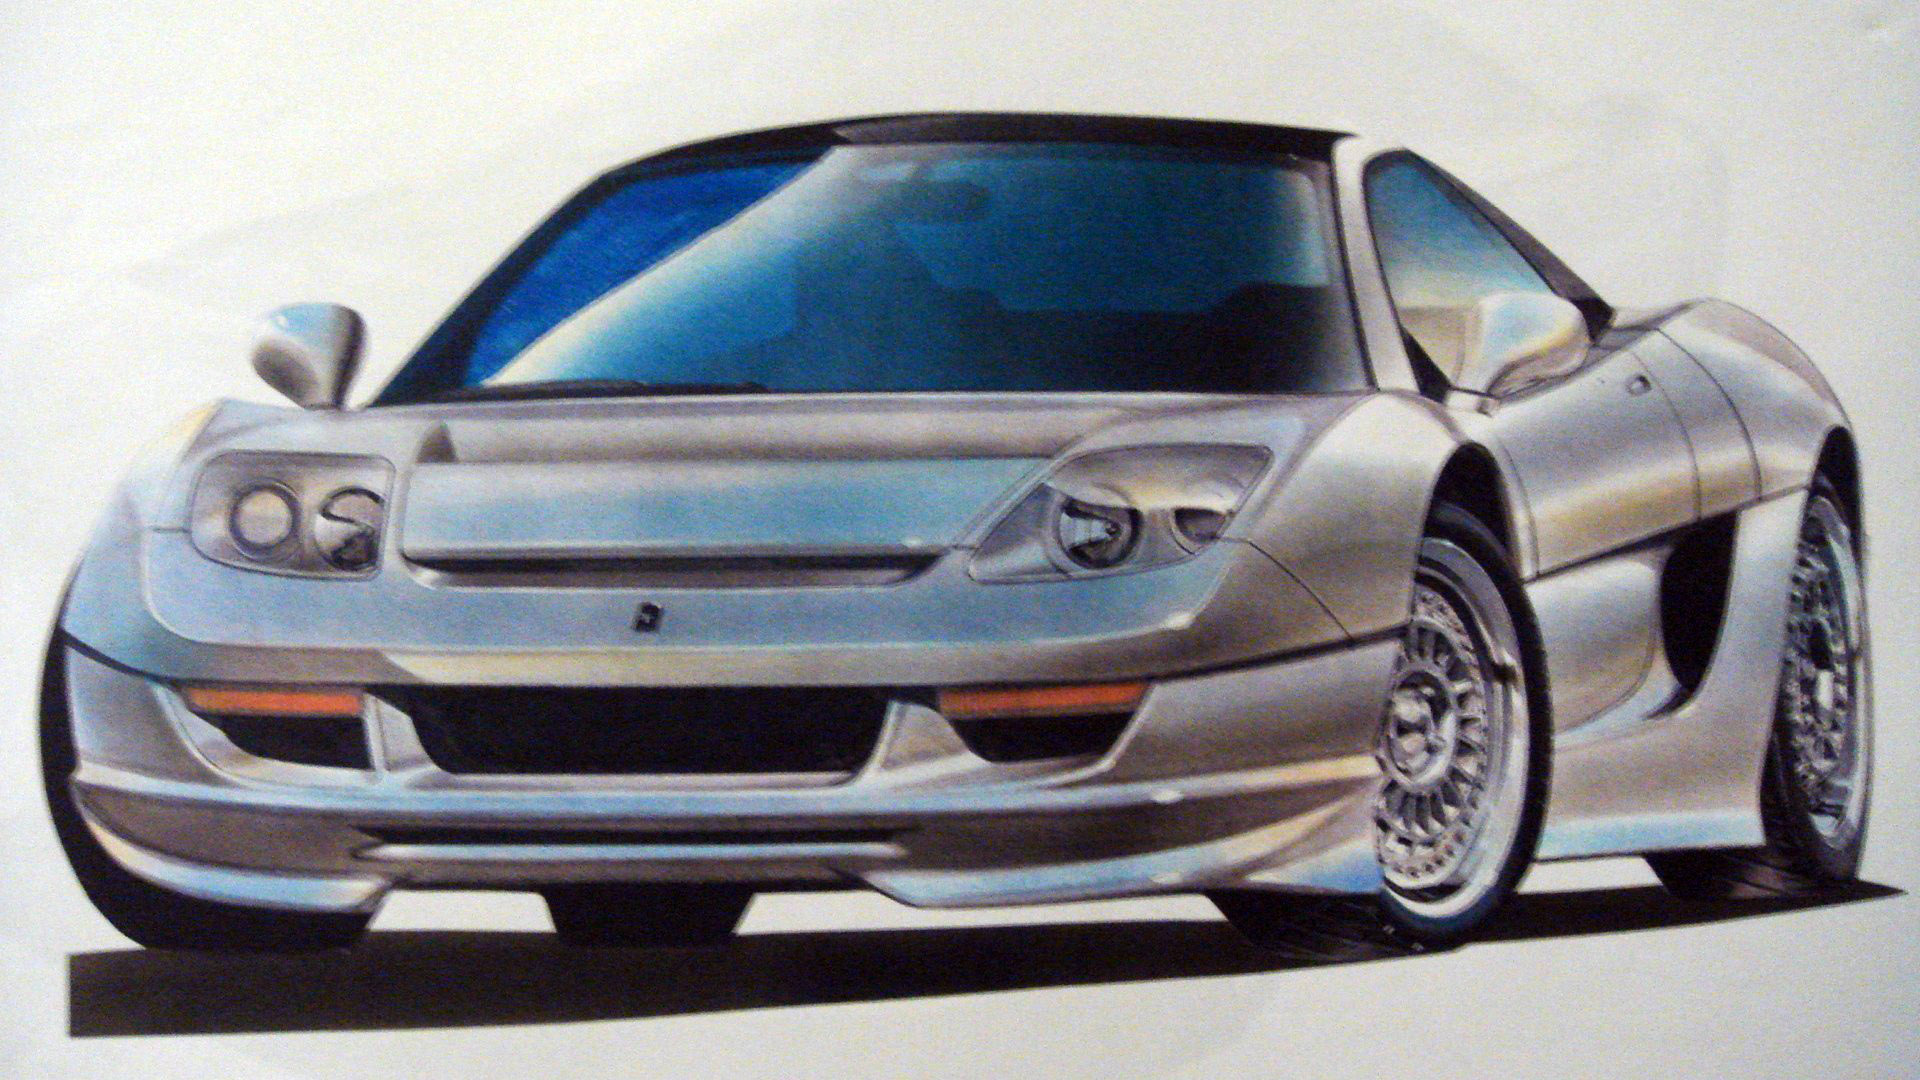 Gigliato Design Aerosa (1997) - Design Sketch